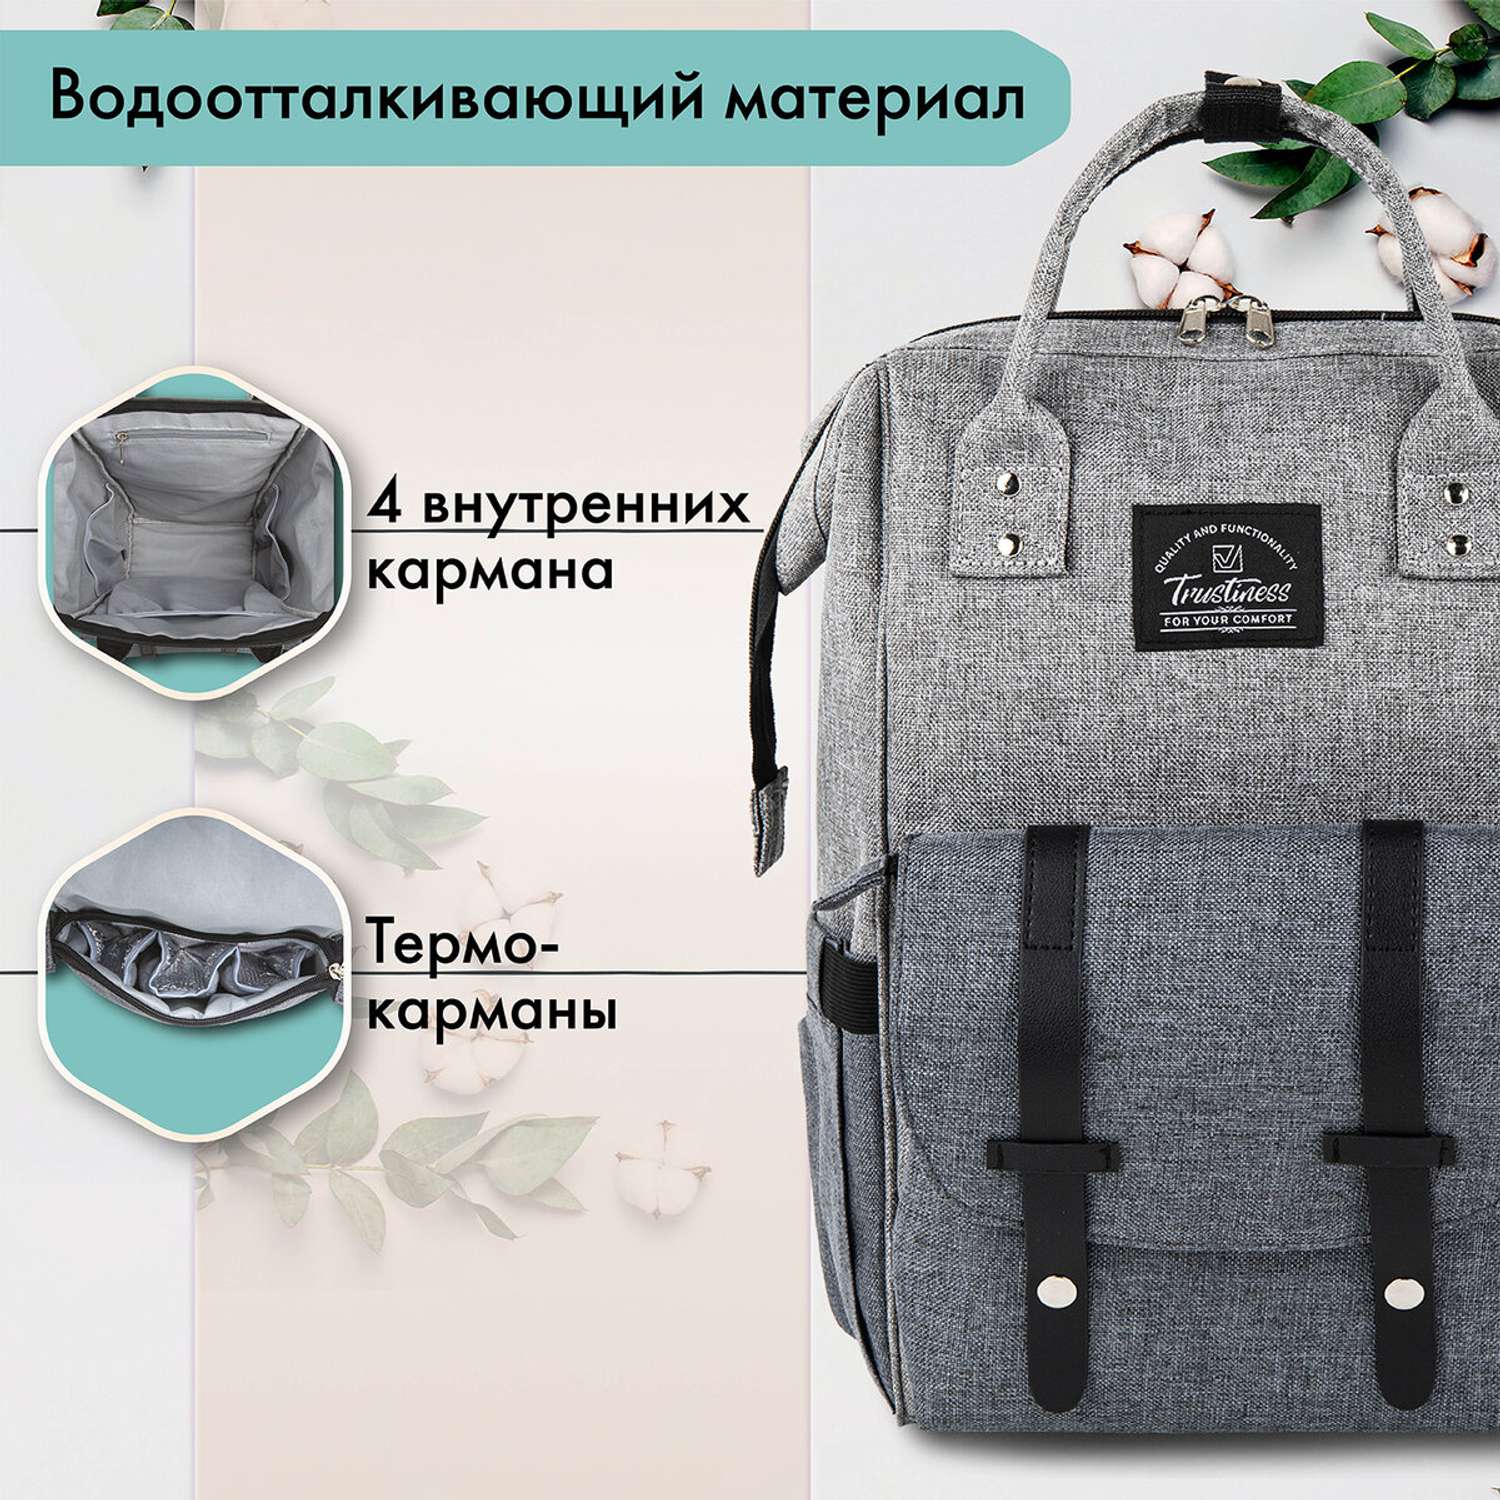 Рюкзак для мамы и малыша Brauberg для коляски с термокарманами - фото 2